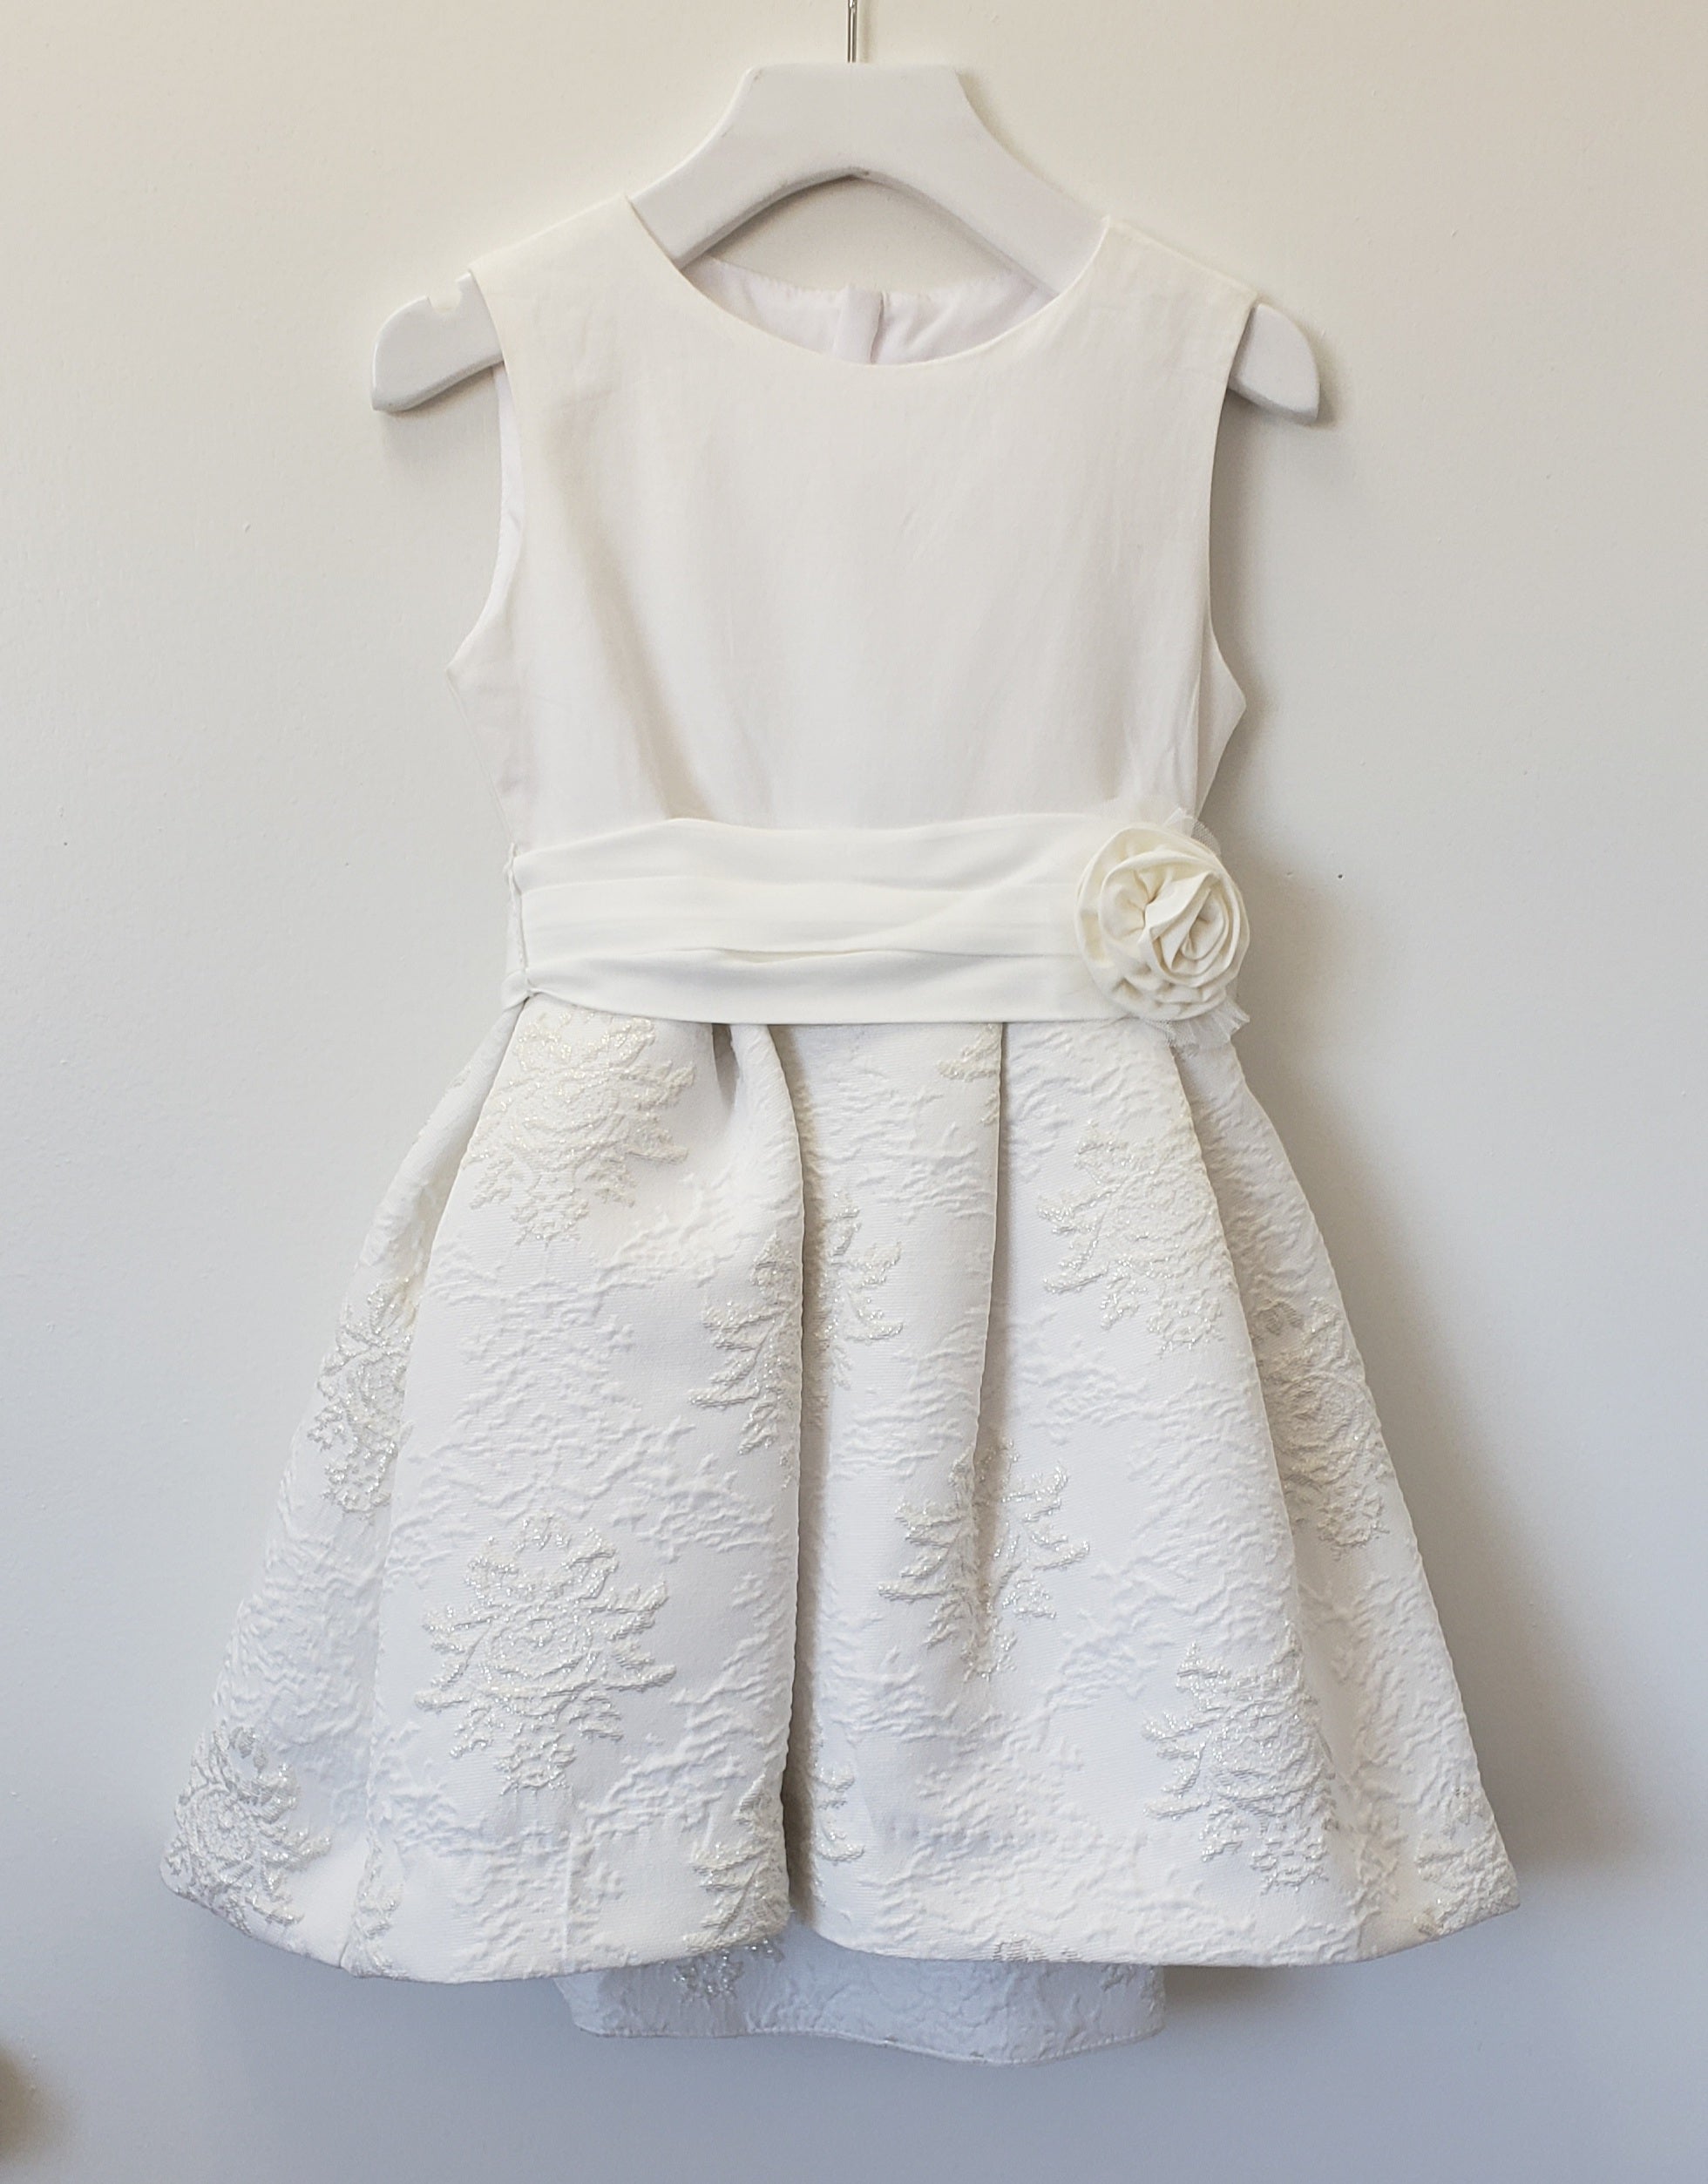 Sleeveless ivory rosette dress